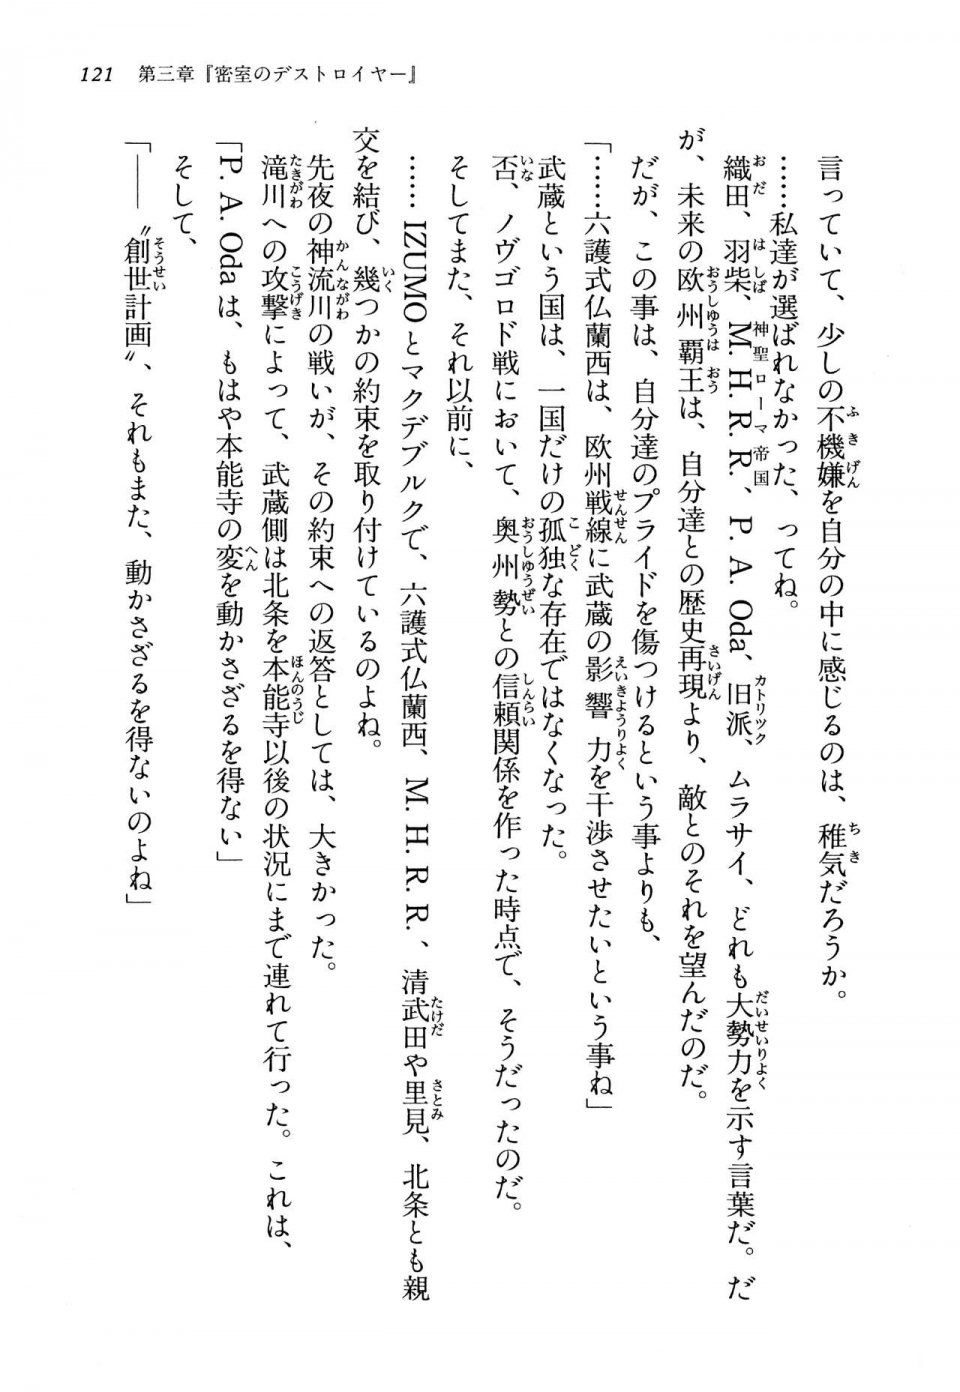 Kyoukai Senjou no Horizon LN Vol 13(6A) - Photo #121